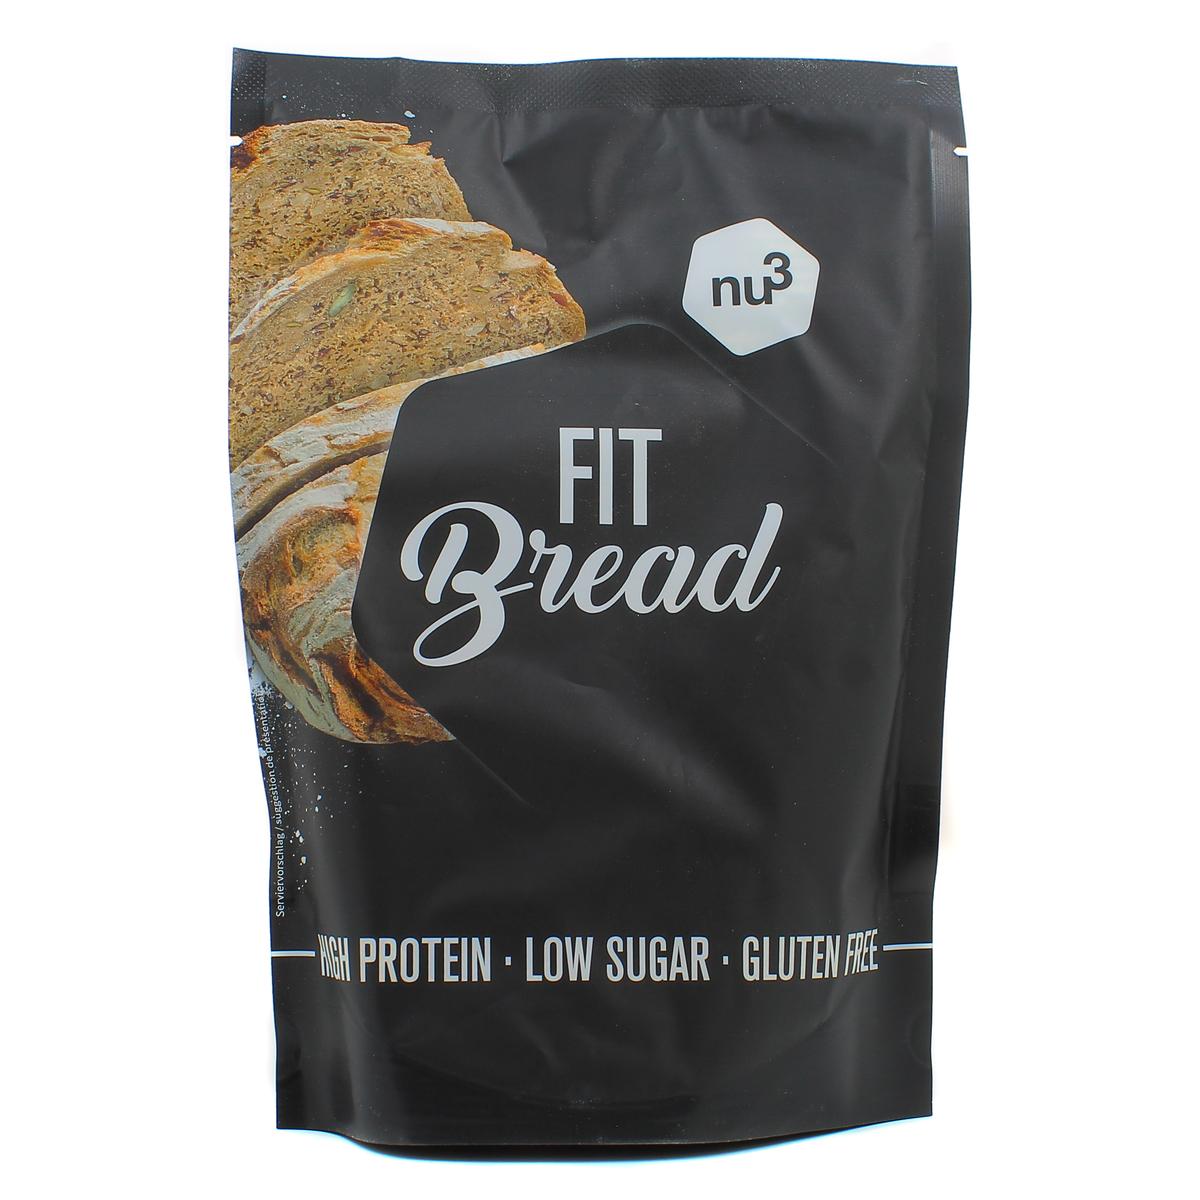 Acheter Promotion NU3 Fit Bread- Préparation pour pâte à pain protéiné